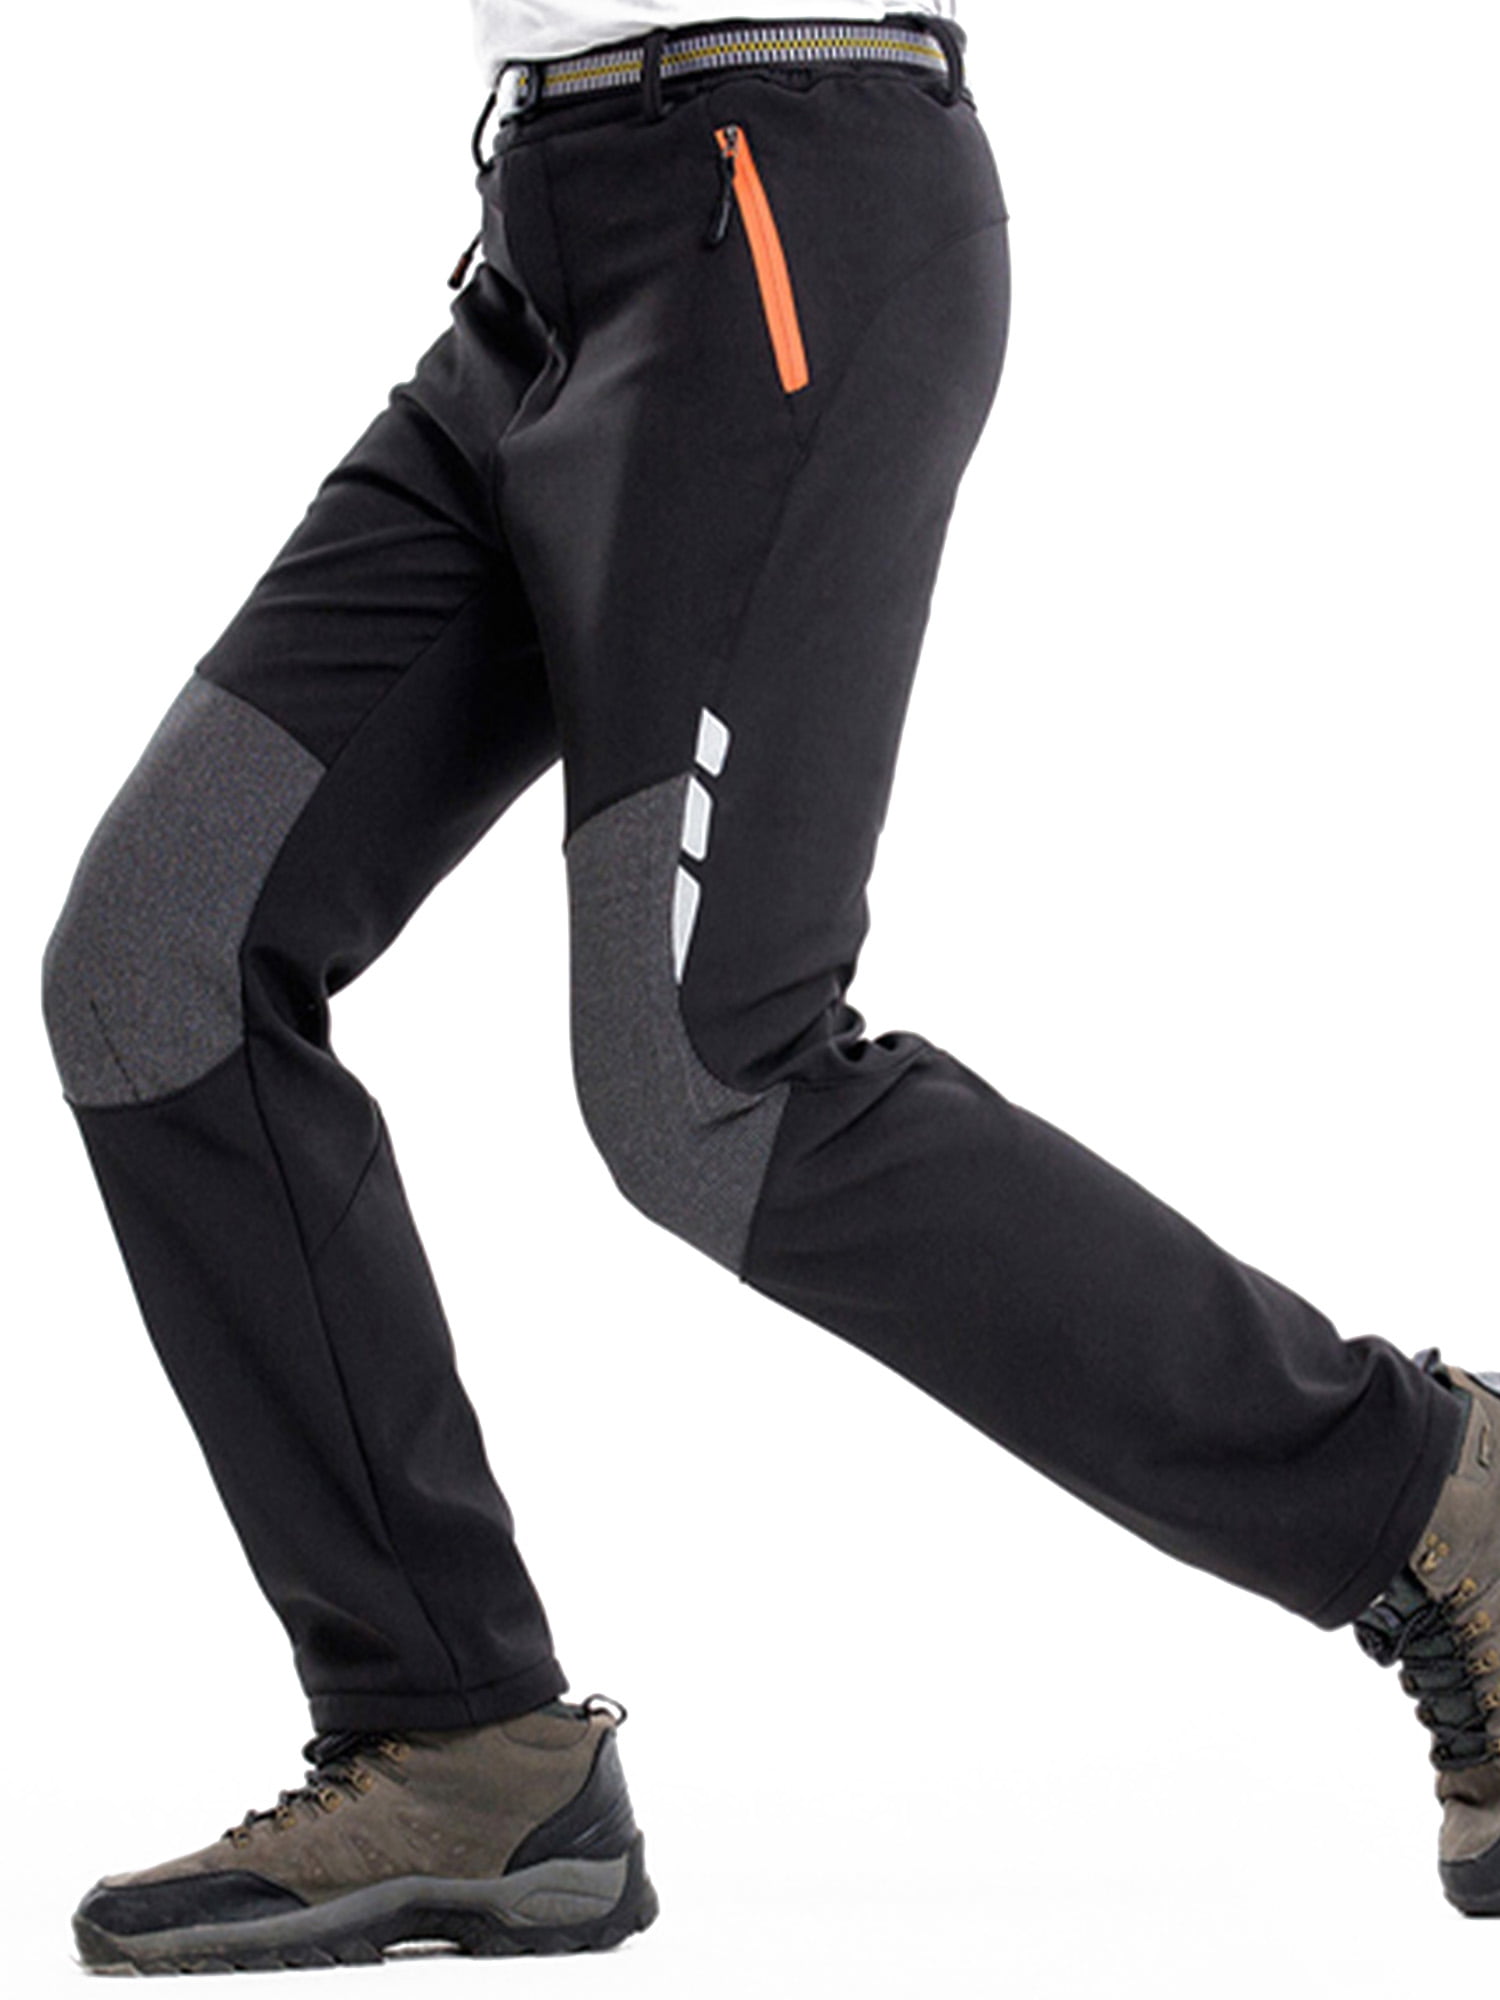 Men's Waterproof Snow Ski Pants Fleece Lined Ripstop Windproof Outdoor Hiking Snowboard Pants Zipper Bottom Leg with Belt 